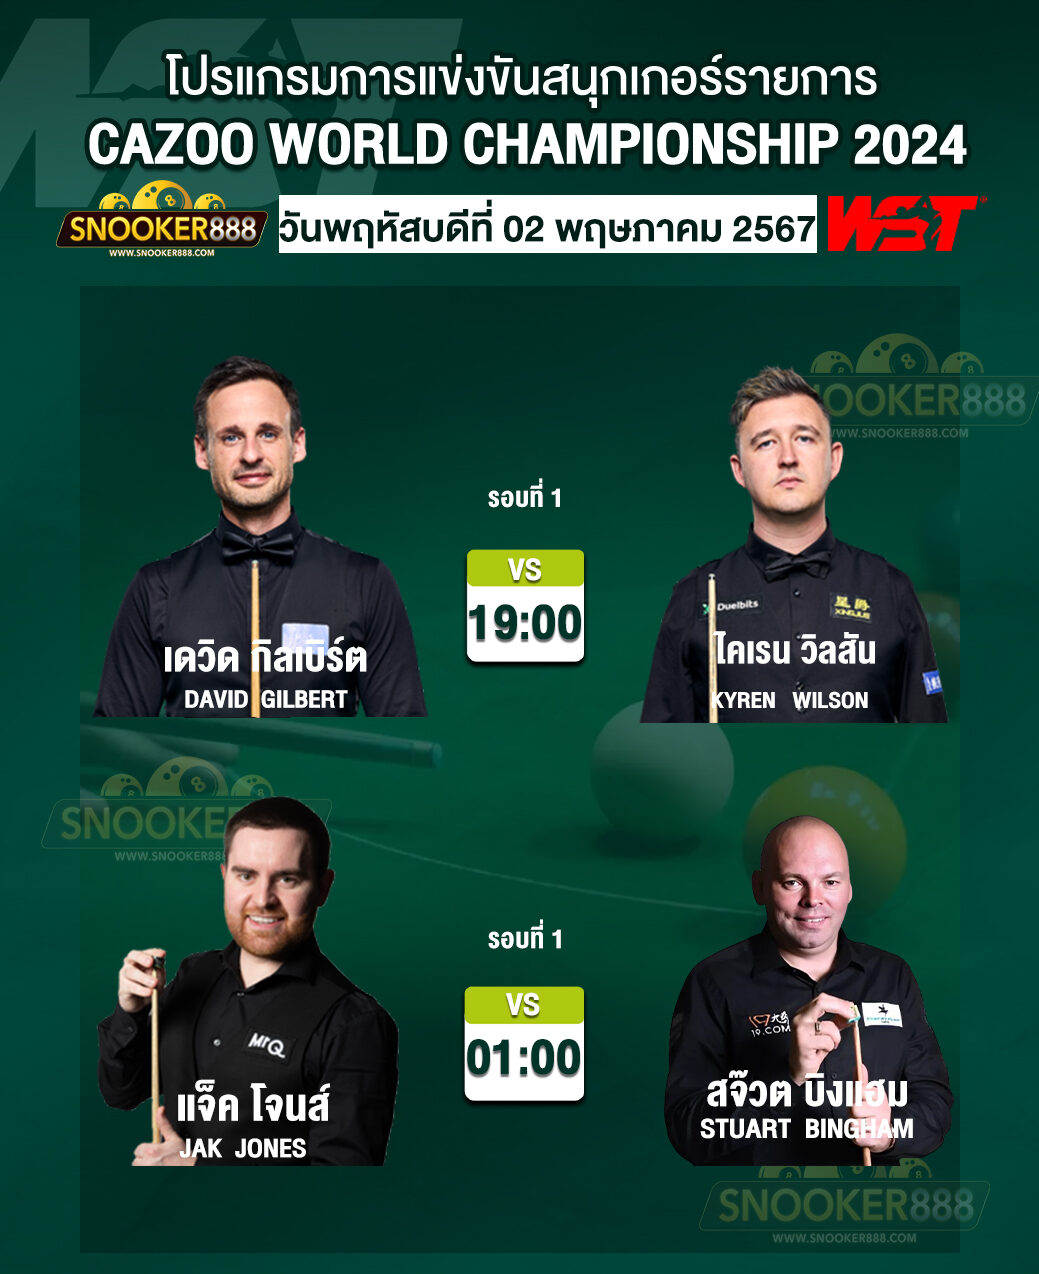 โปรแกรมการแข่งขันสนุกเกอร์ CAZOO WORLD CHAMPIONSHIP 2024 วันที่ 2 พ.ค. 67